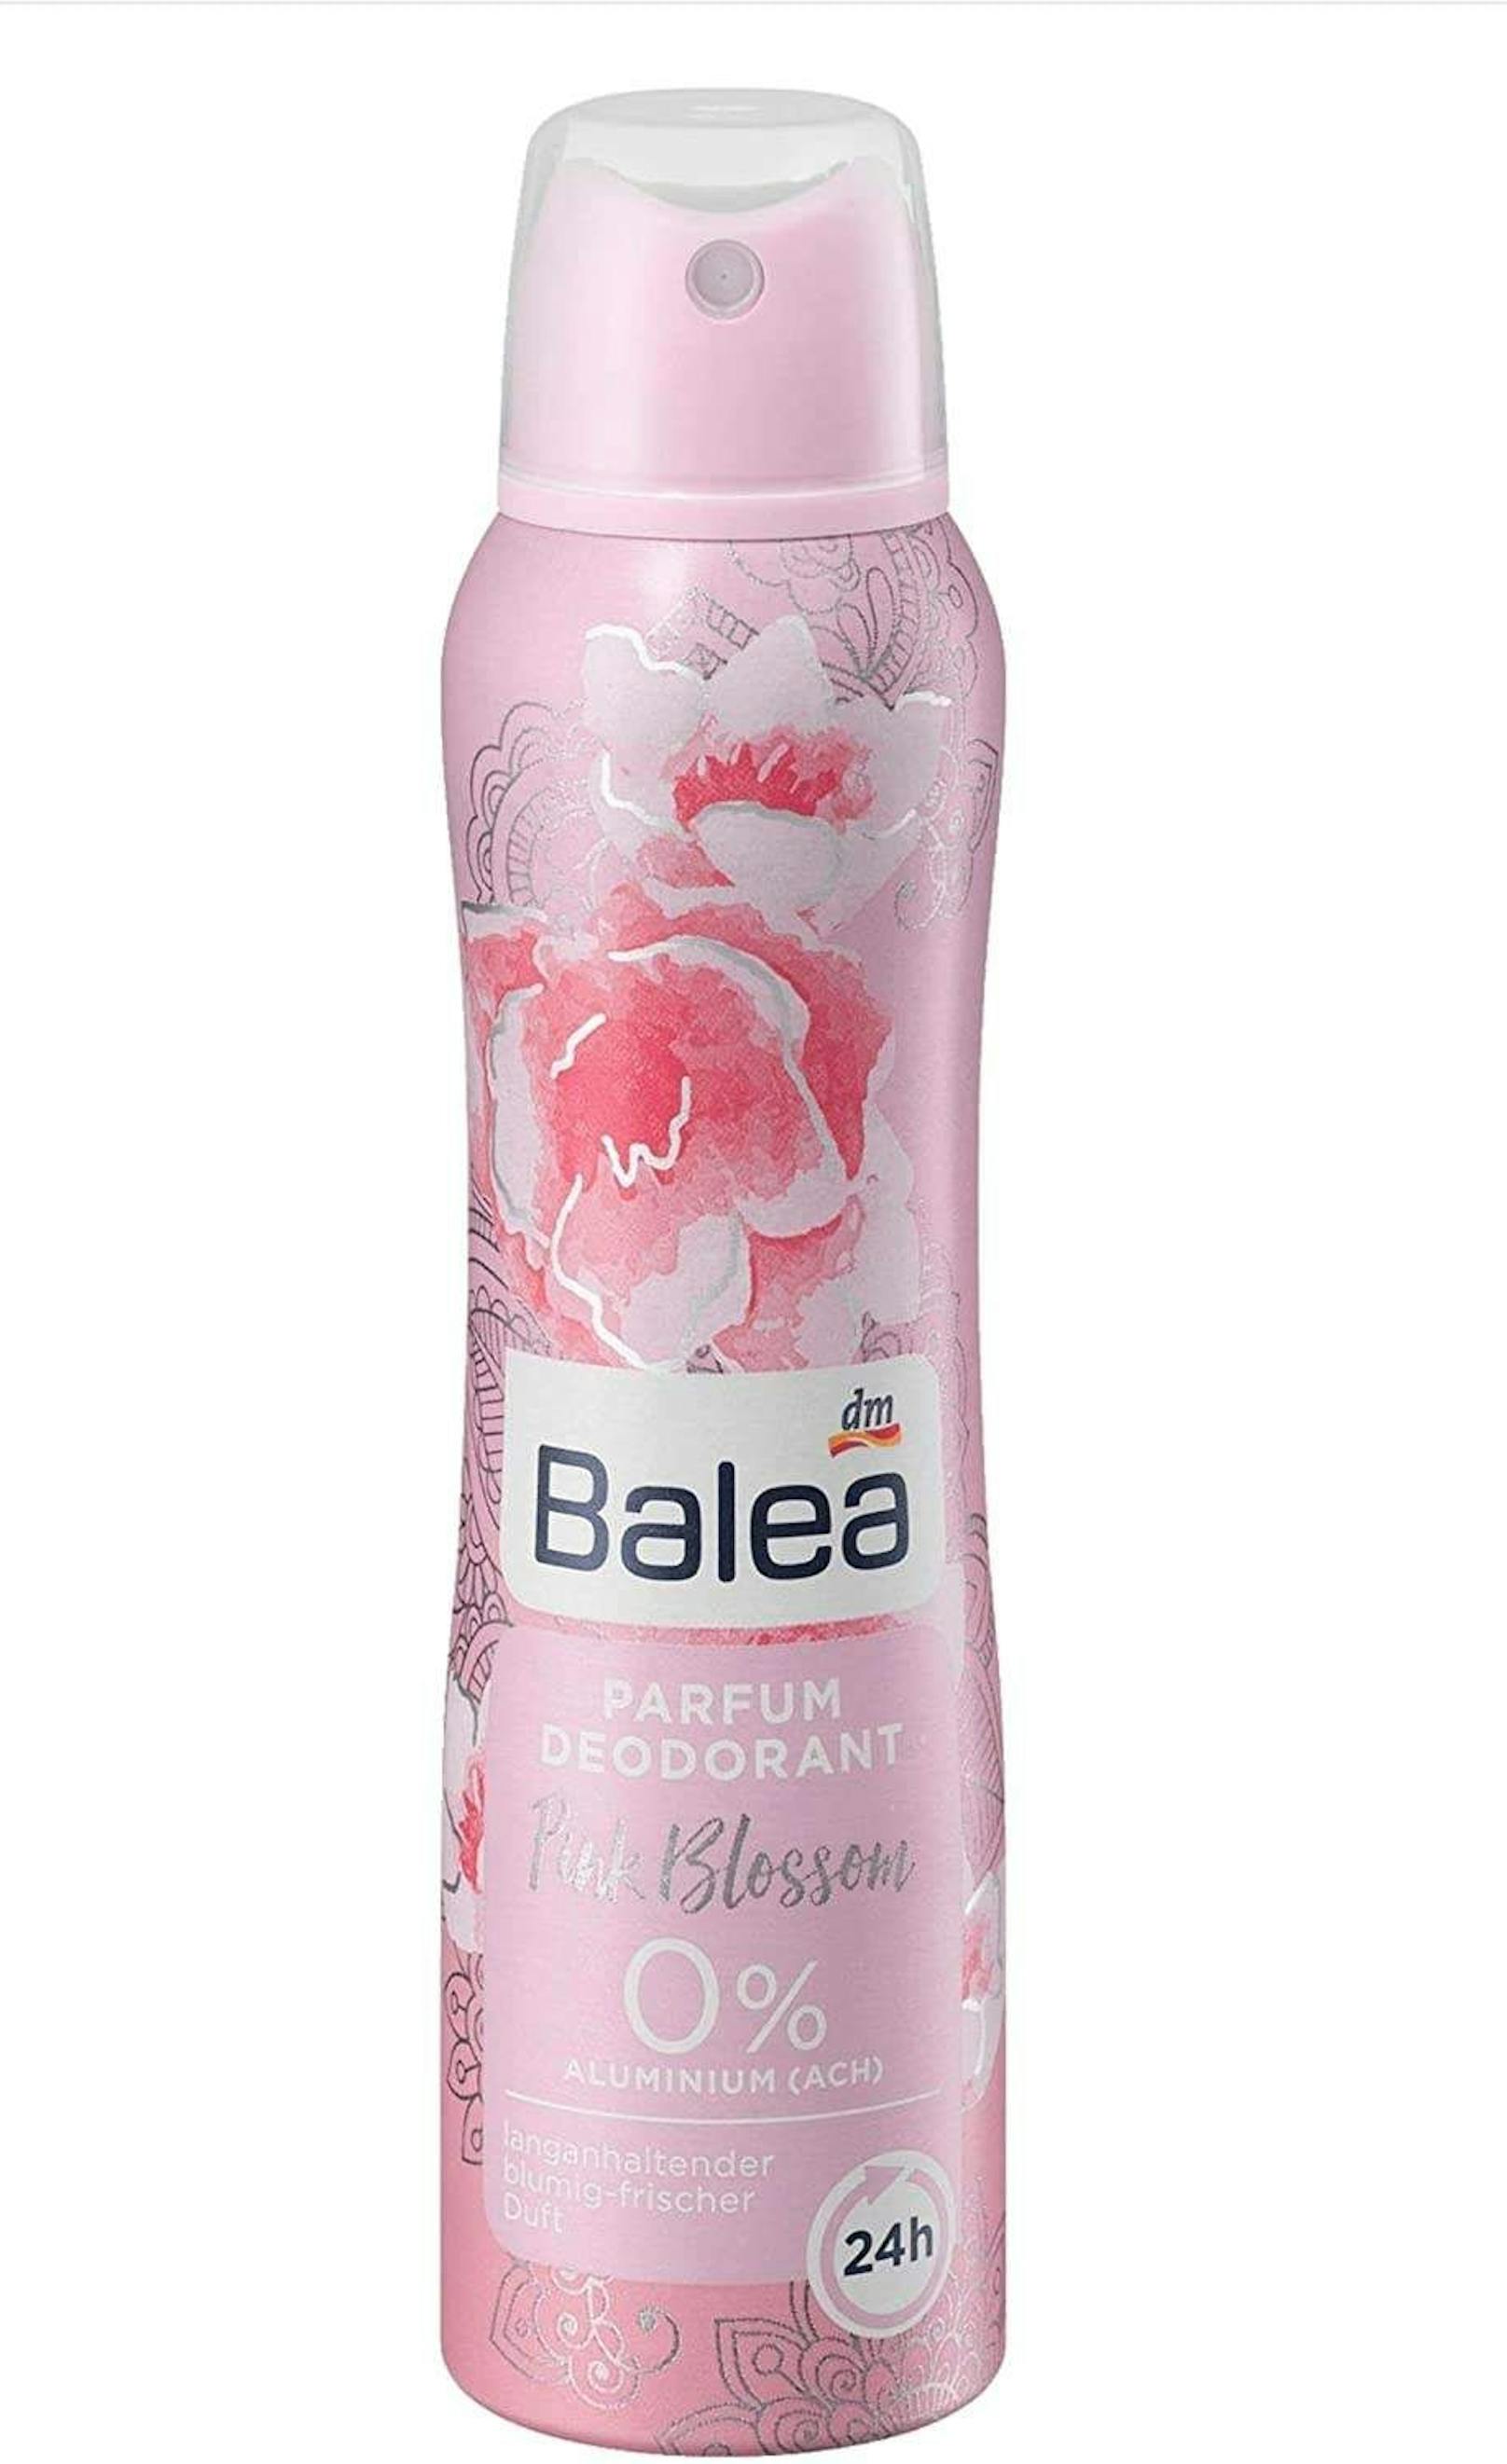 Das Balea Parfum Deodorant Pink Blossom von dm bekam mit 45 Punkten sogar weniger als die Hälfte des möglichen Erreichbaren.